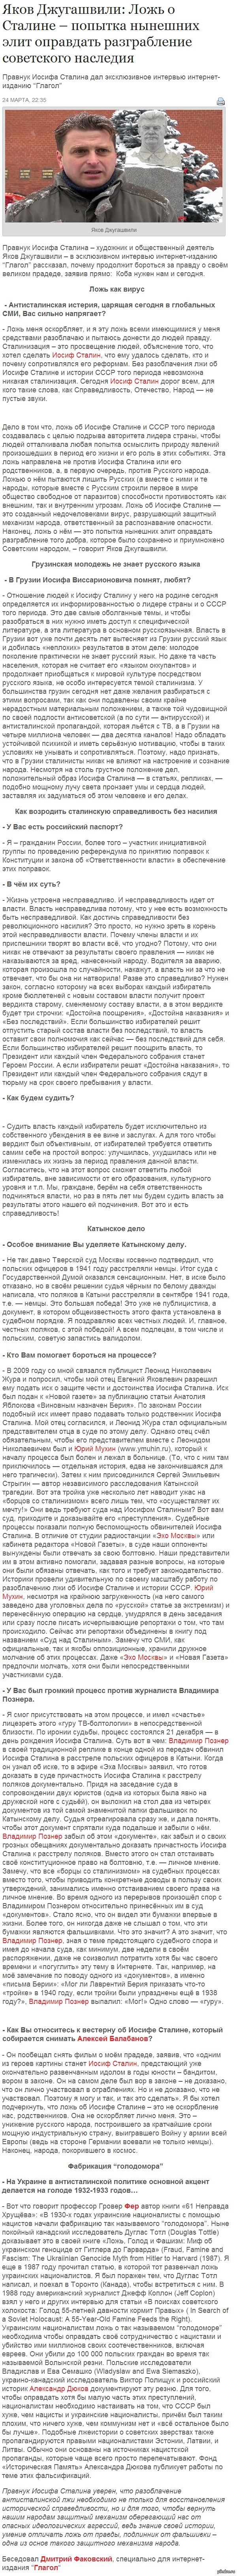     http://glagol.in.ua/2013/03/24/yakov-dzhugashvili-lozh-o-staline-popyitka-nyineshnih-elit-opravdat-razgrablenie-sovetskogo-naslediya/#ixzz2xFqDf3lM